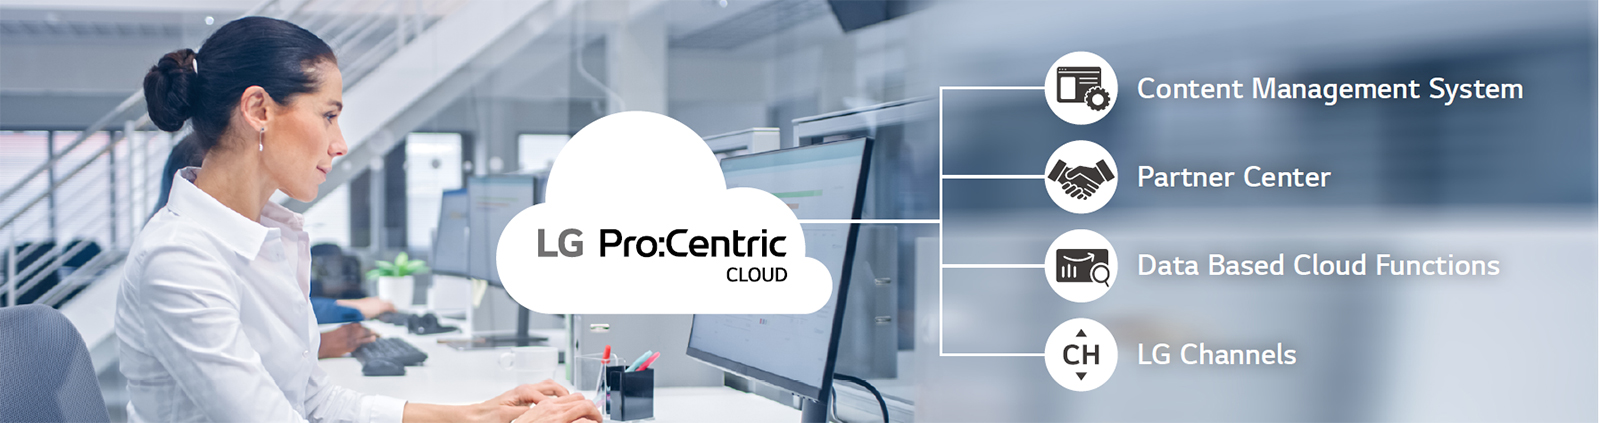 Pro:Centric Cloud